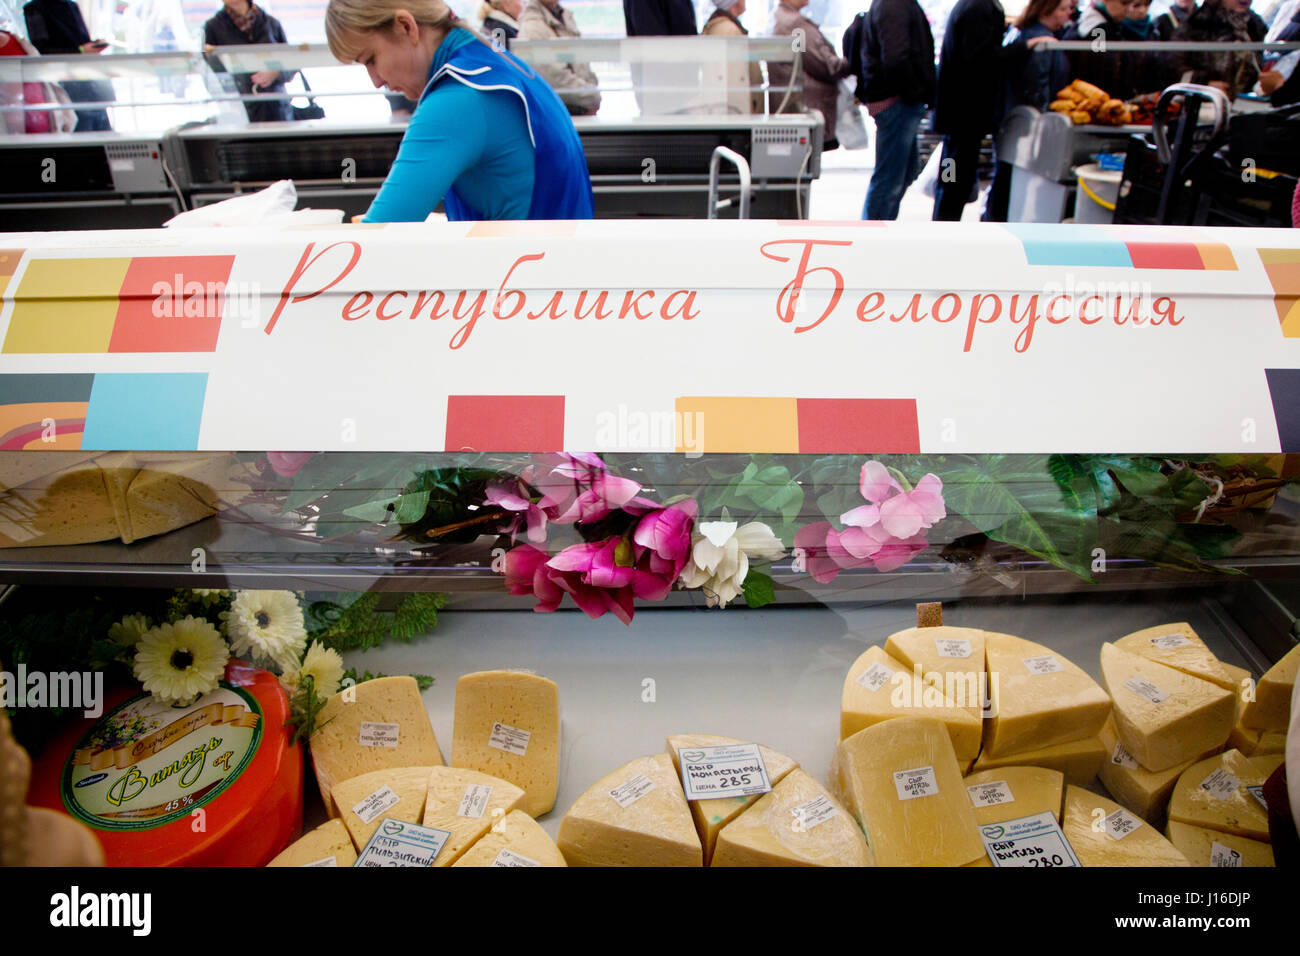 Venta de productos lácteos procedentes de la República de Belarús en la feria agropecuaria en VDNH en Moscú, Rusia Foto de stock